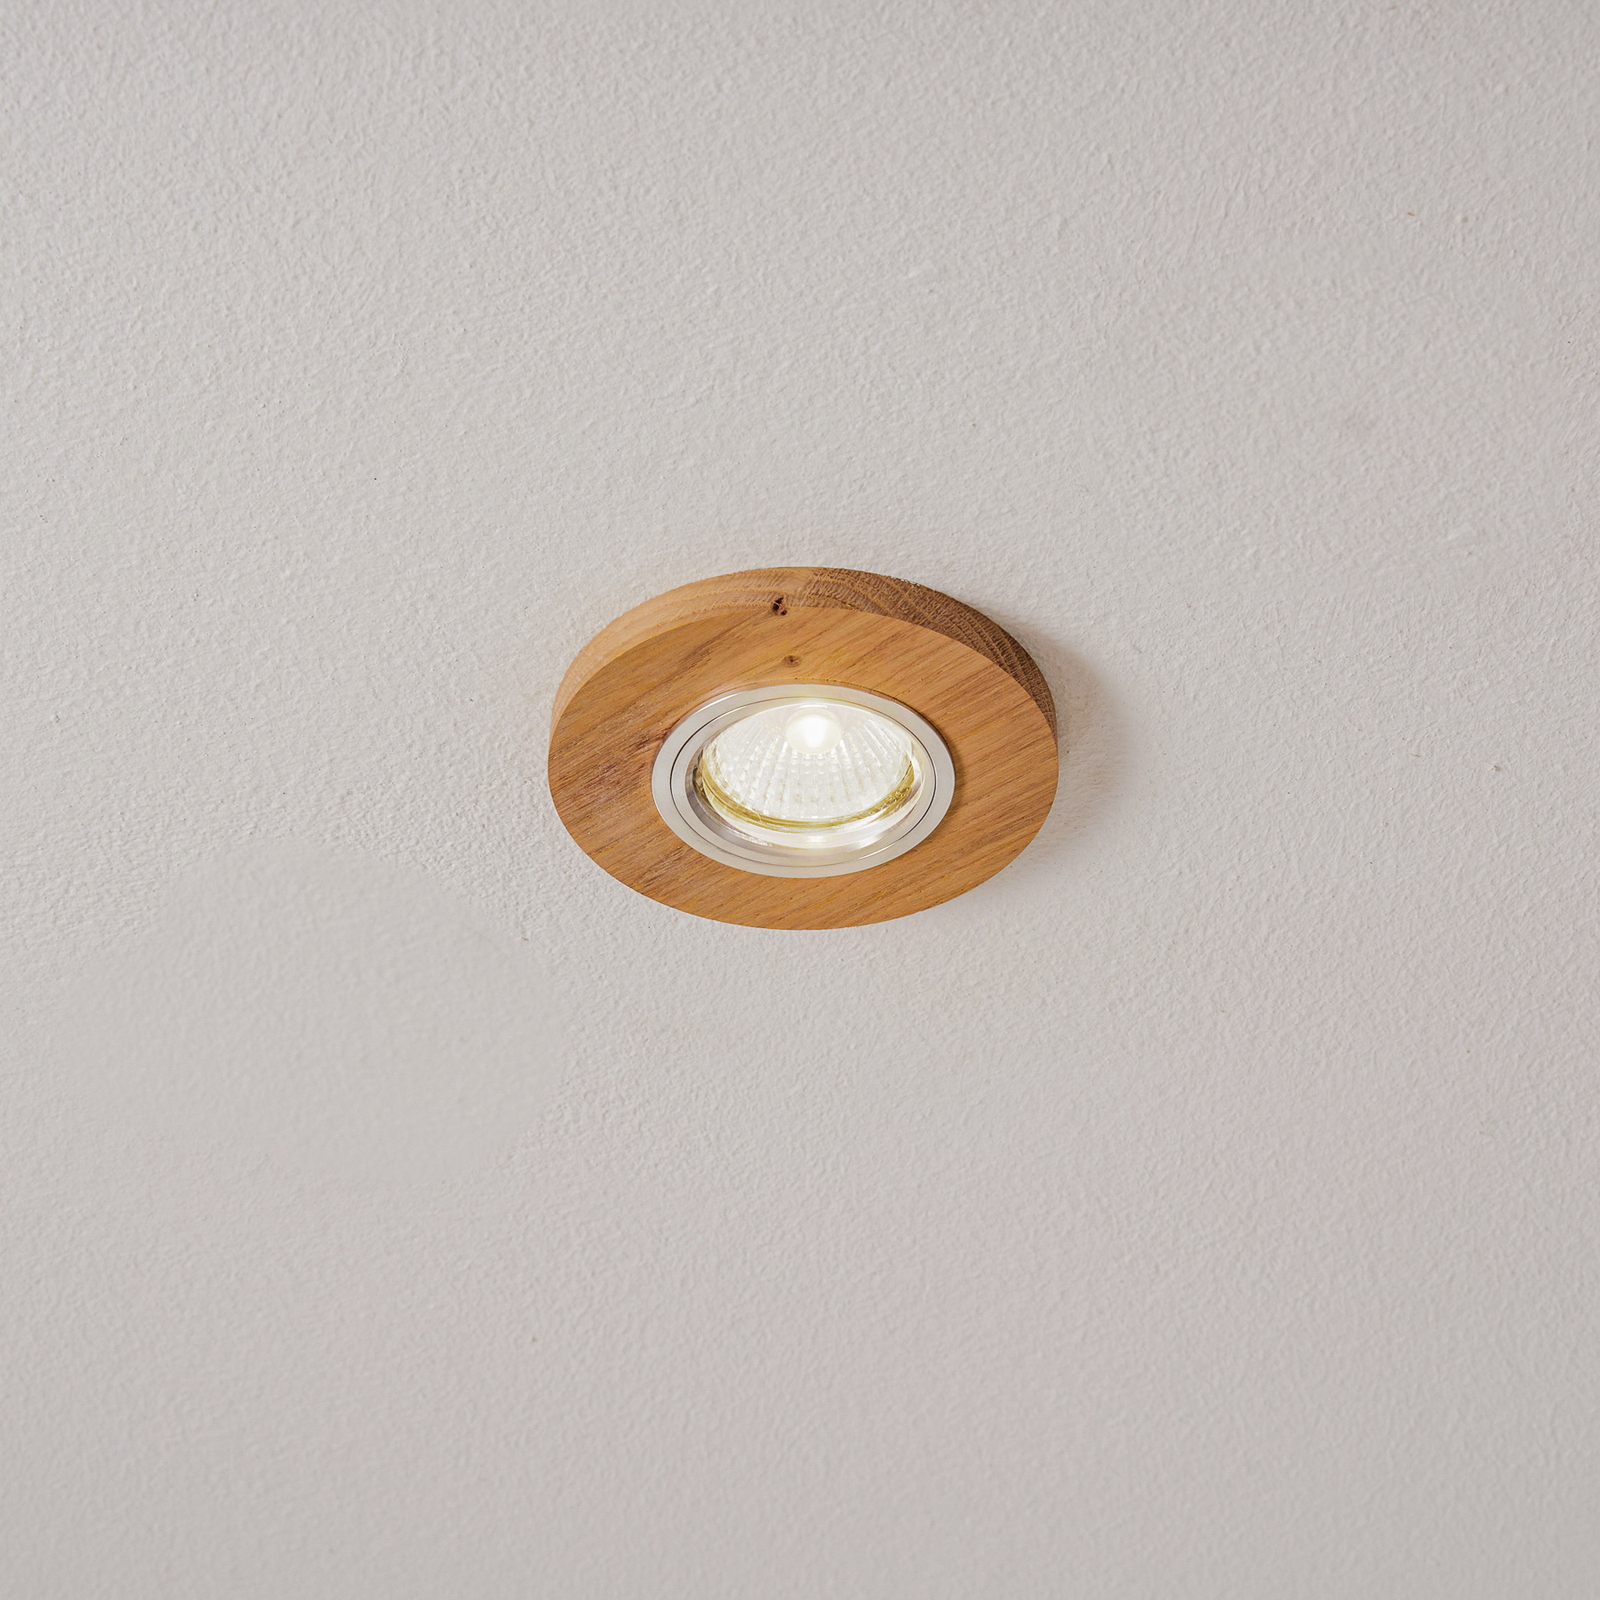 Sirion LED downlight, Ø 10 cm oiled oak